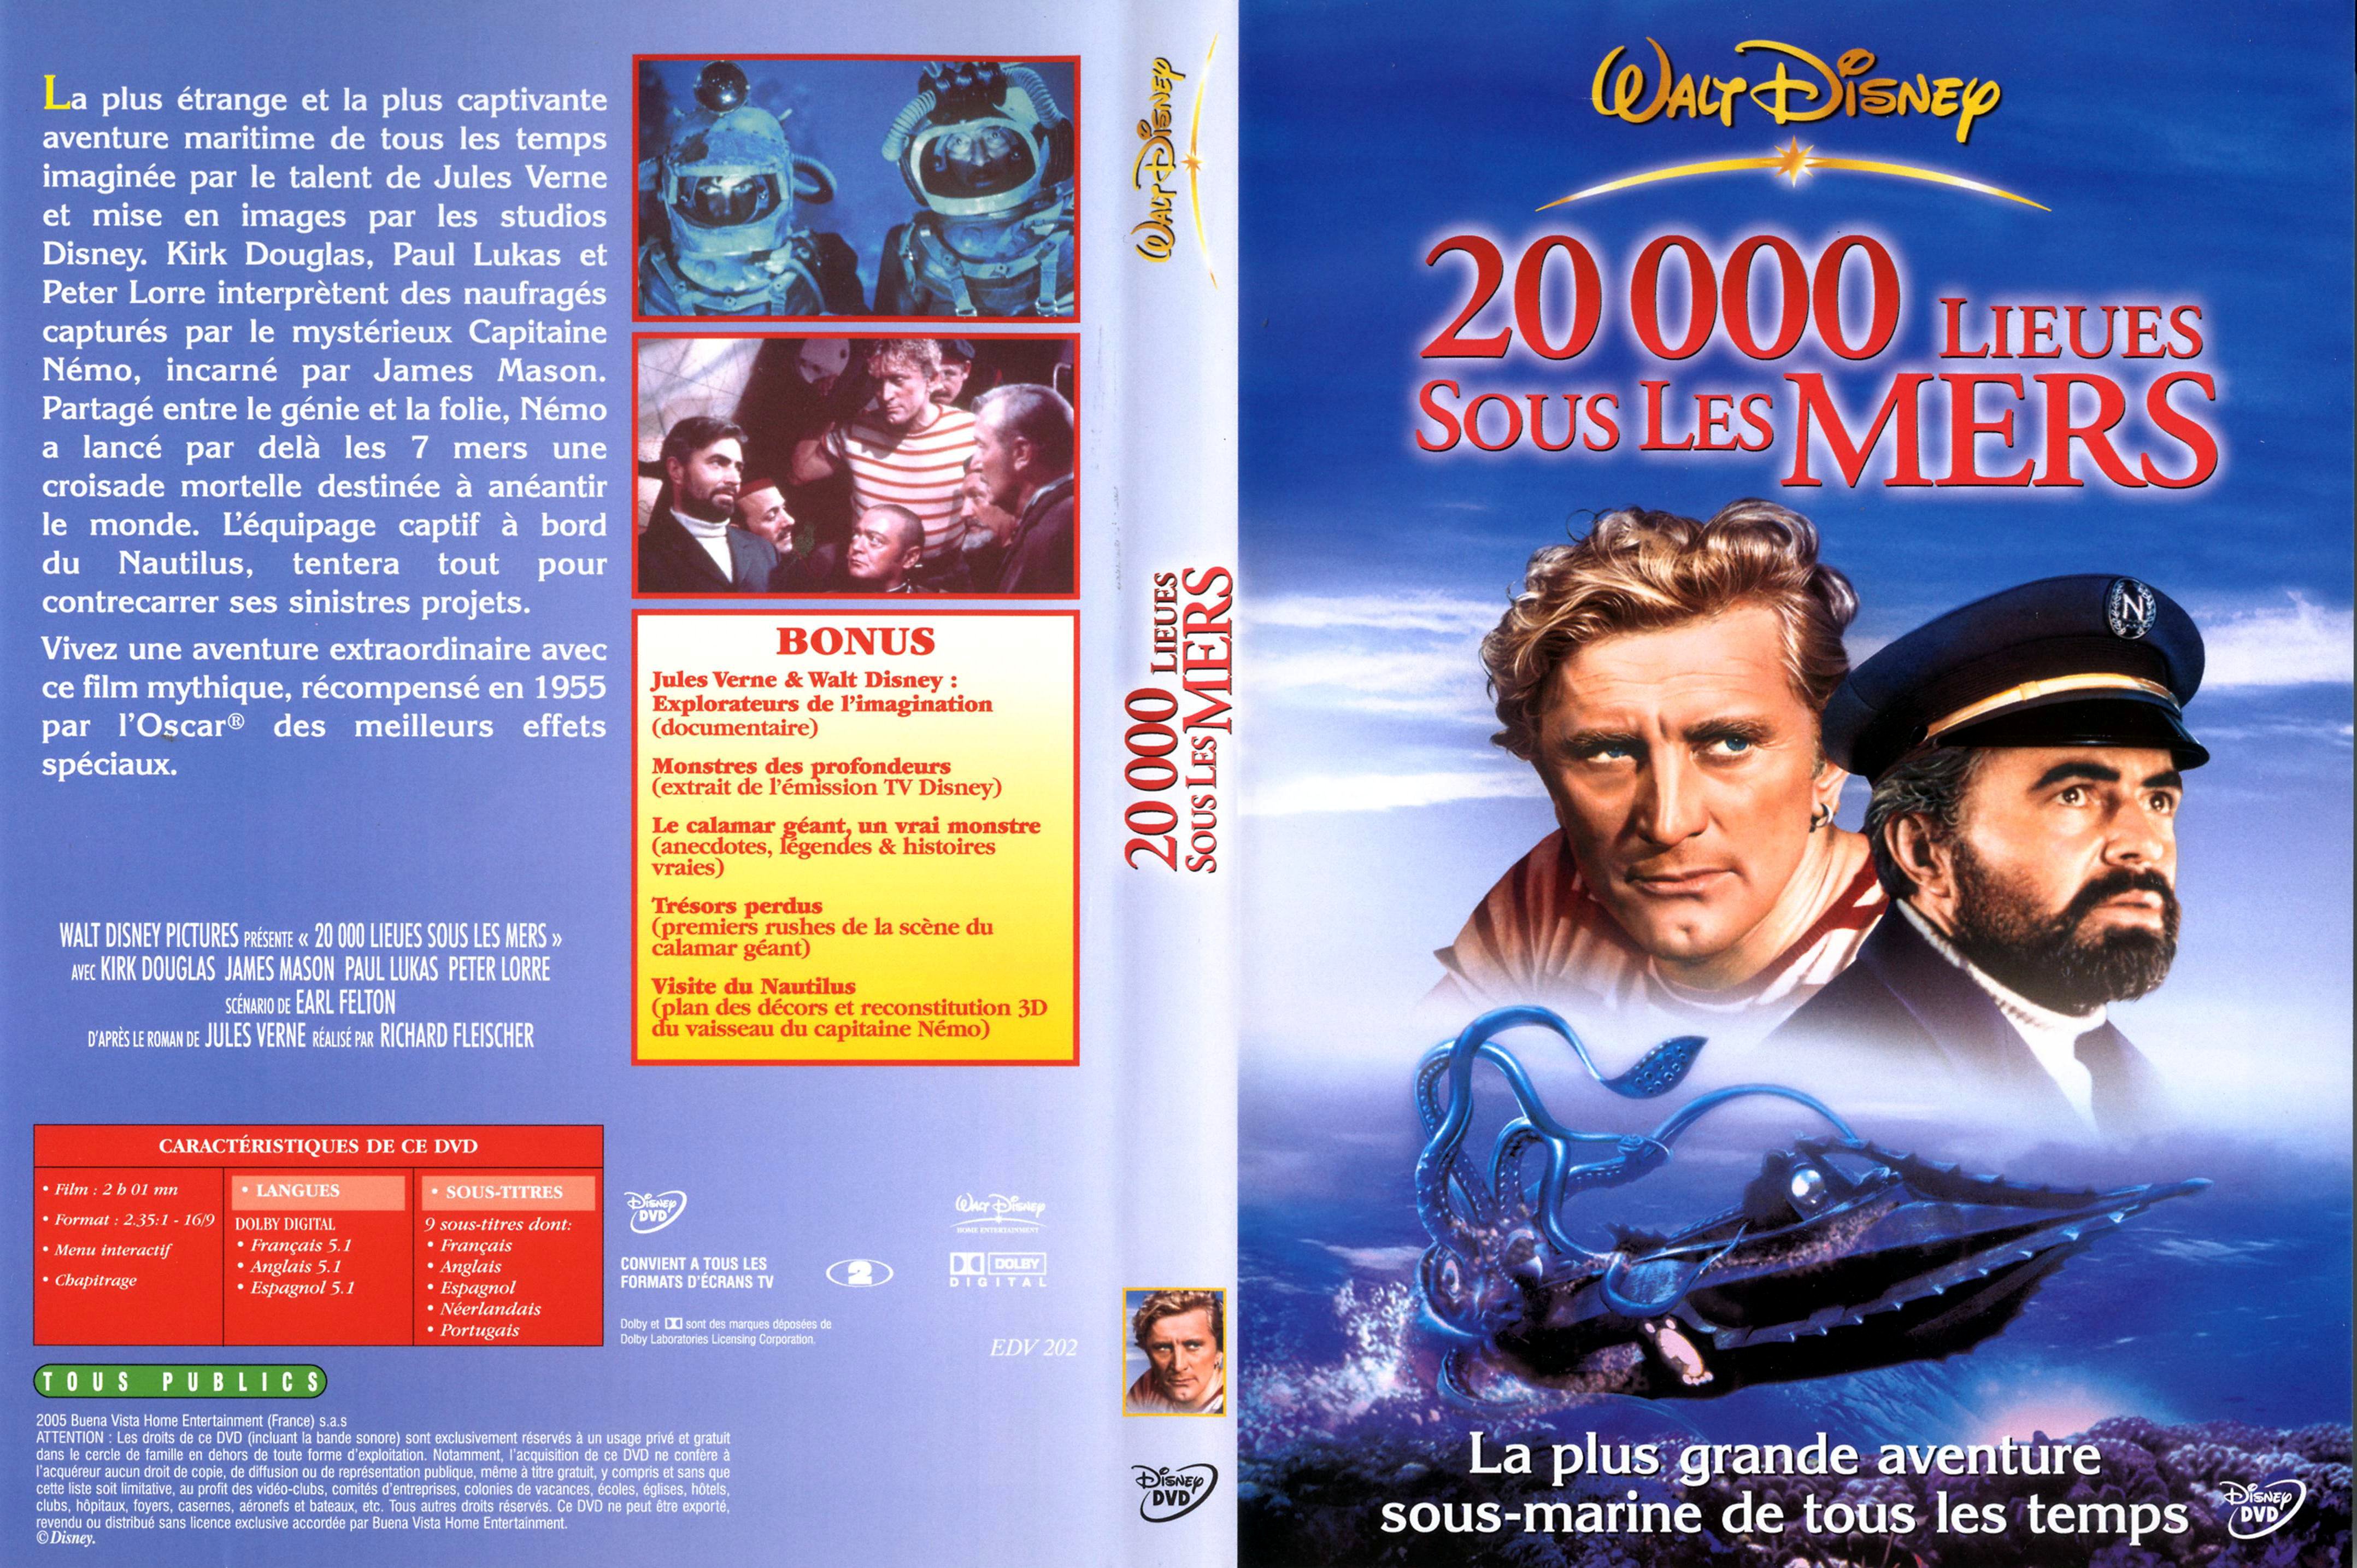 Jaquette DVD 20000 lieues sous les mers v3